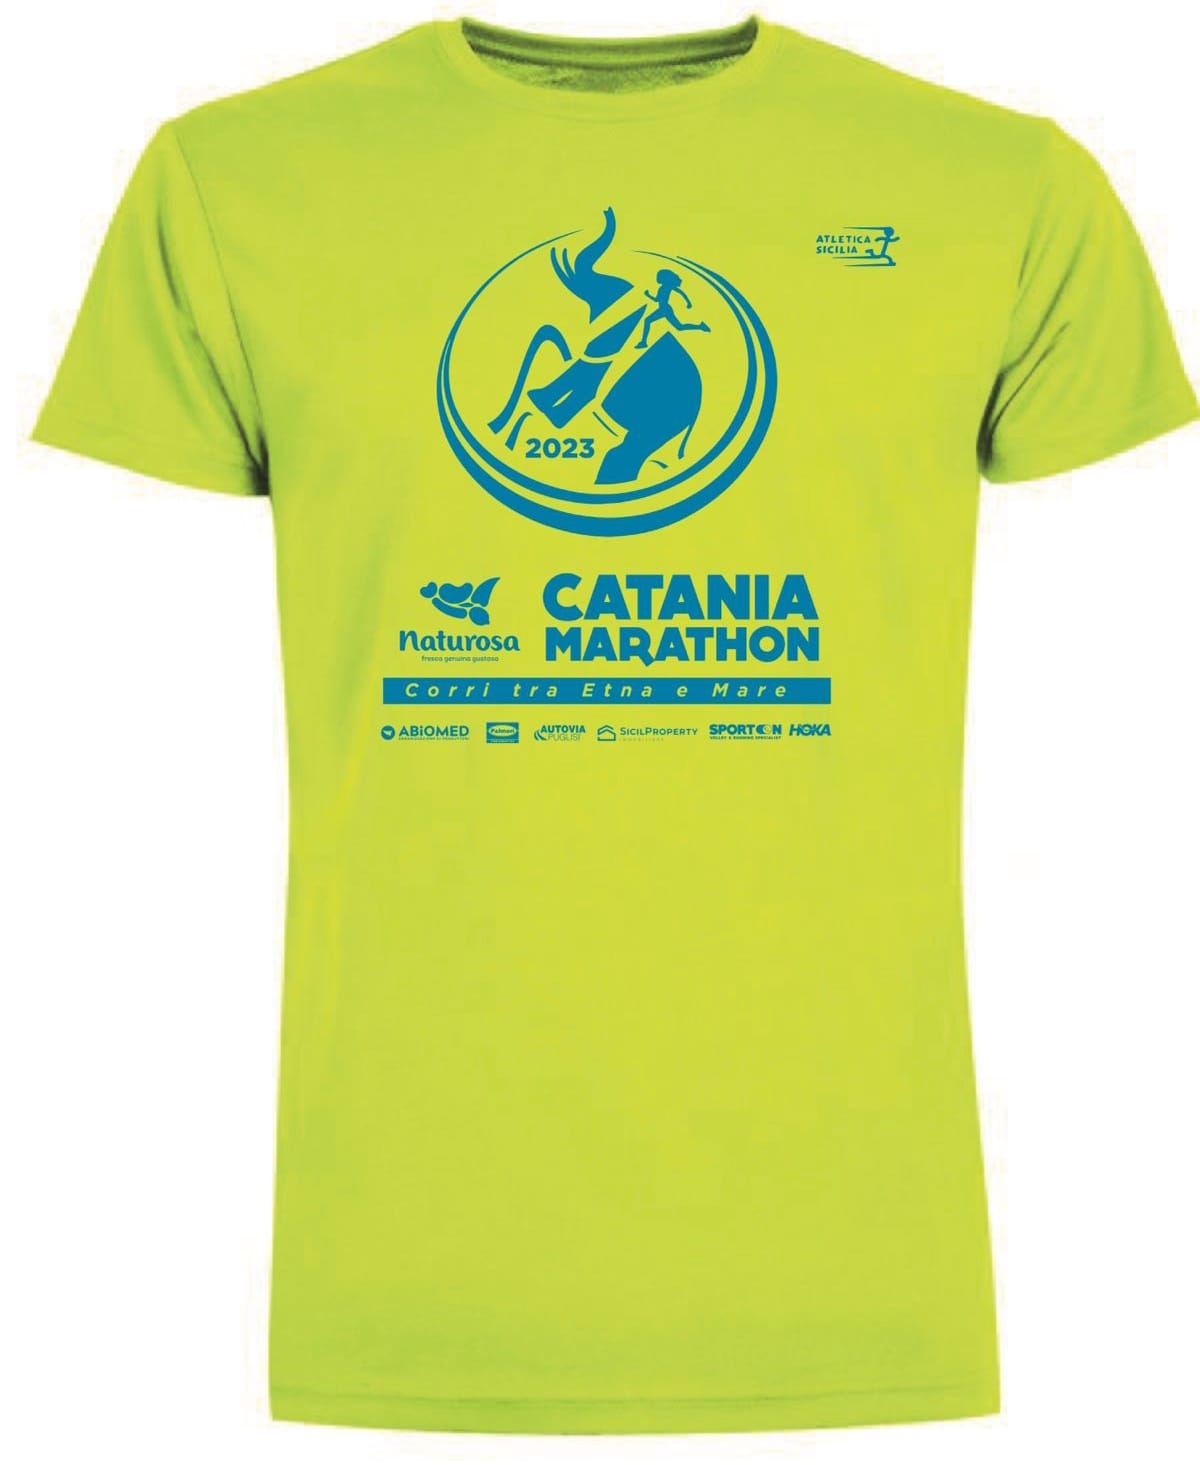 Ecco la maglia ufficiale della Naturosa Catania Marathon